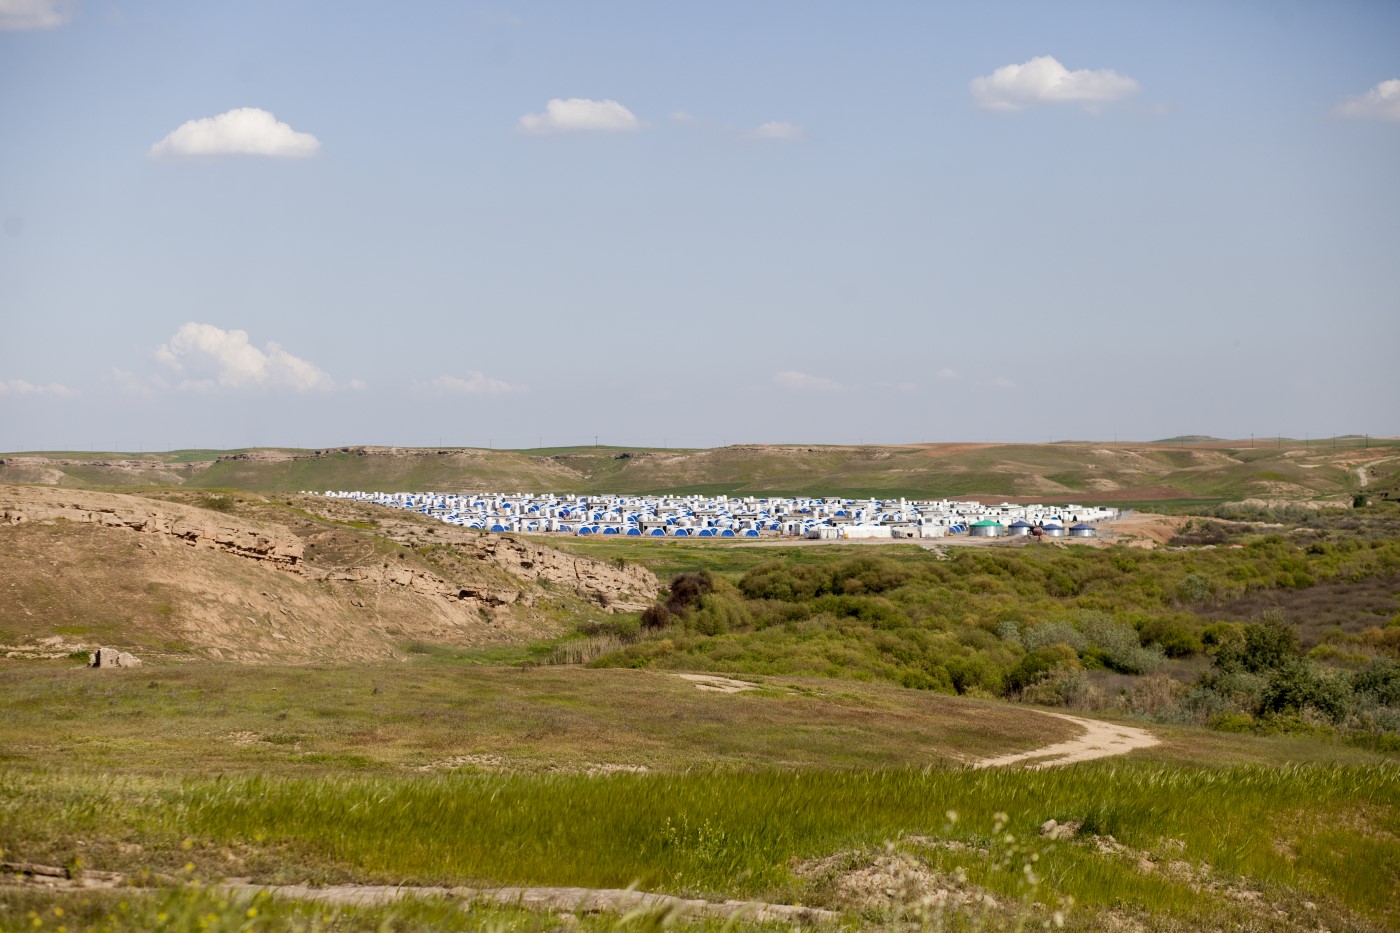 Vista general del Camp de desplaçats Hassan Sham IDP (Internally Displaced People). Mossul - Erbil, Kurdistan, Iraq. 17 d’abril de 2017